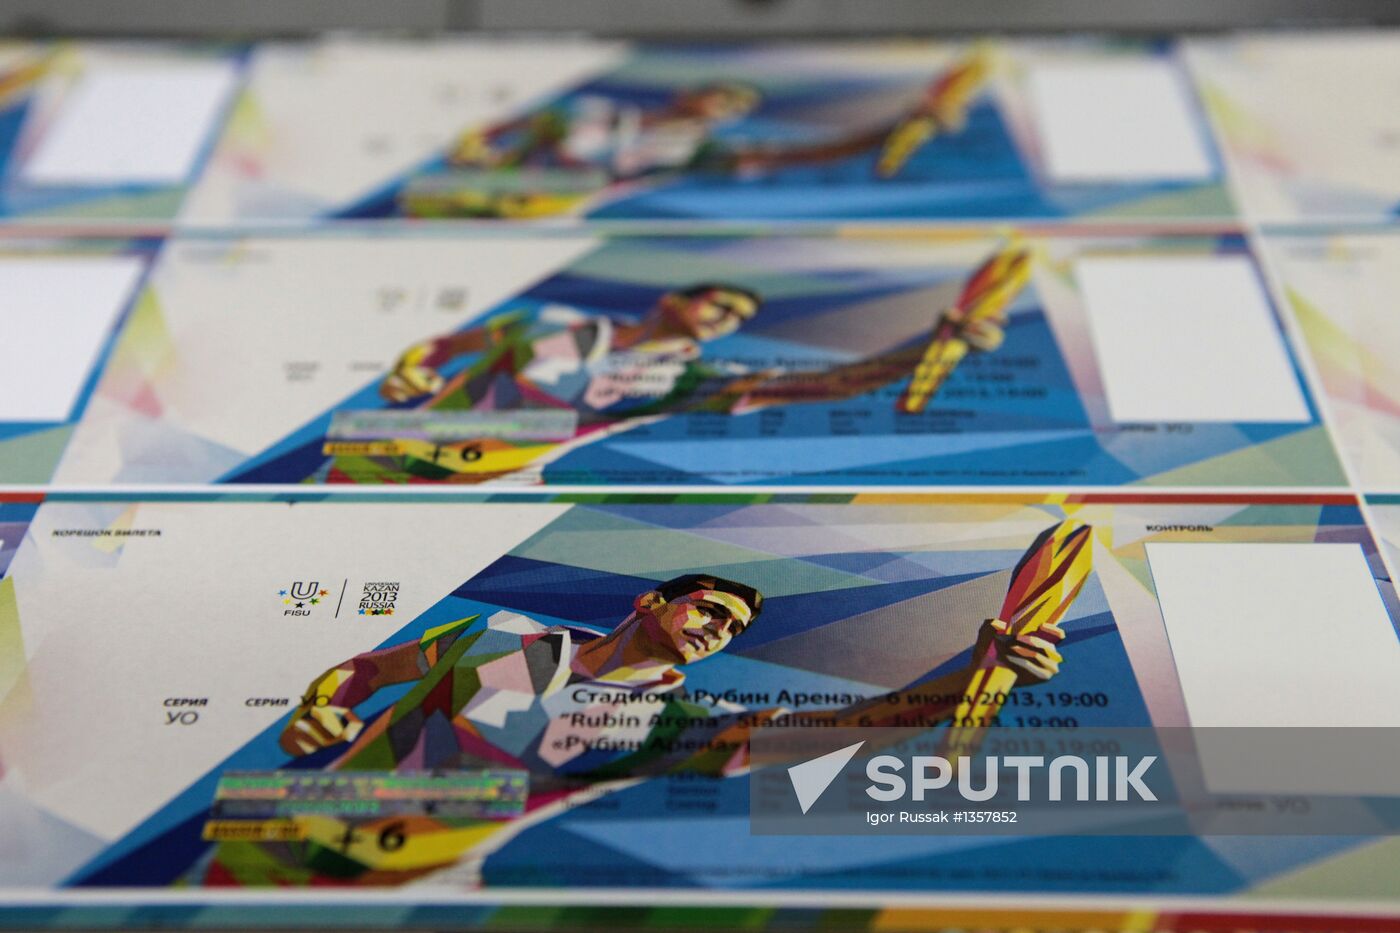 2013 Universiade ticket printing